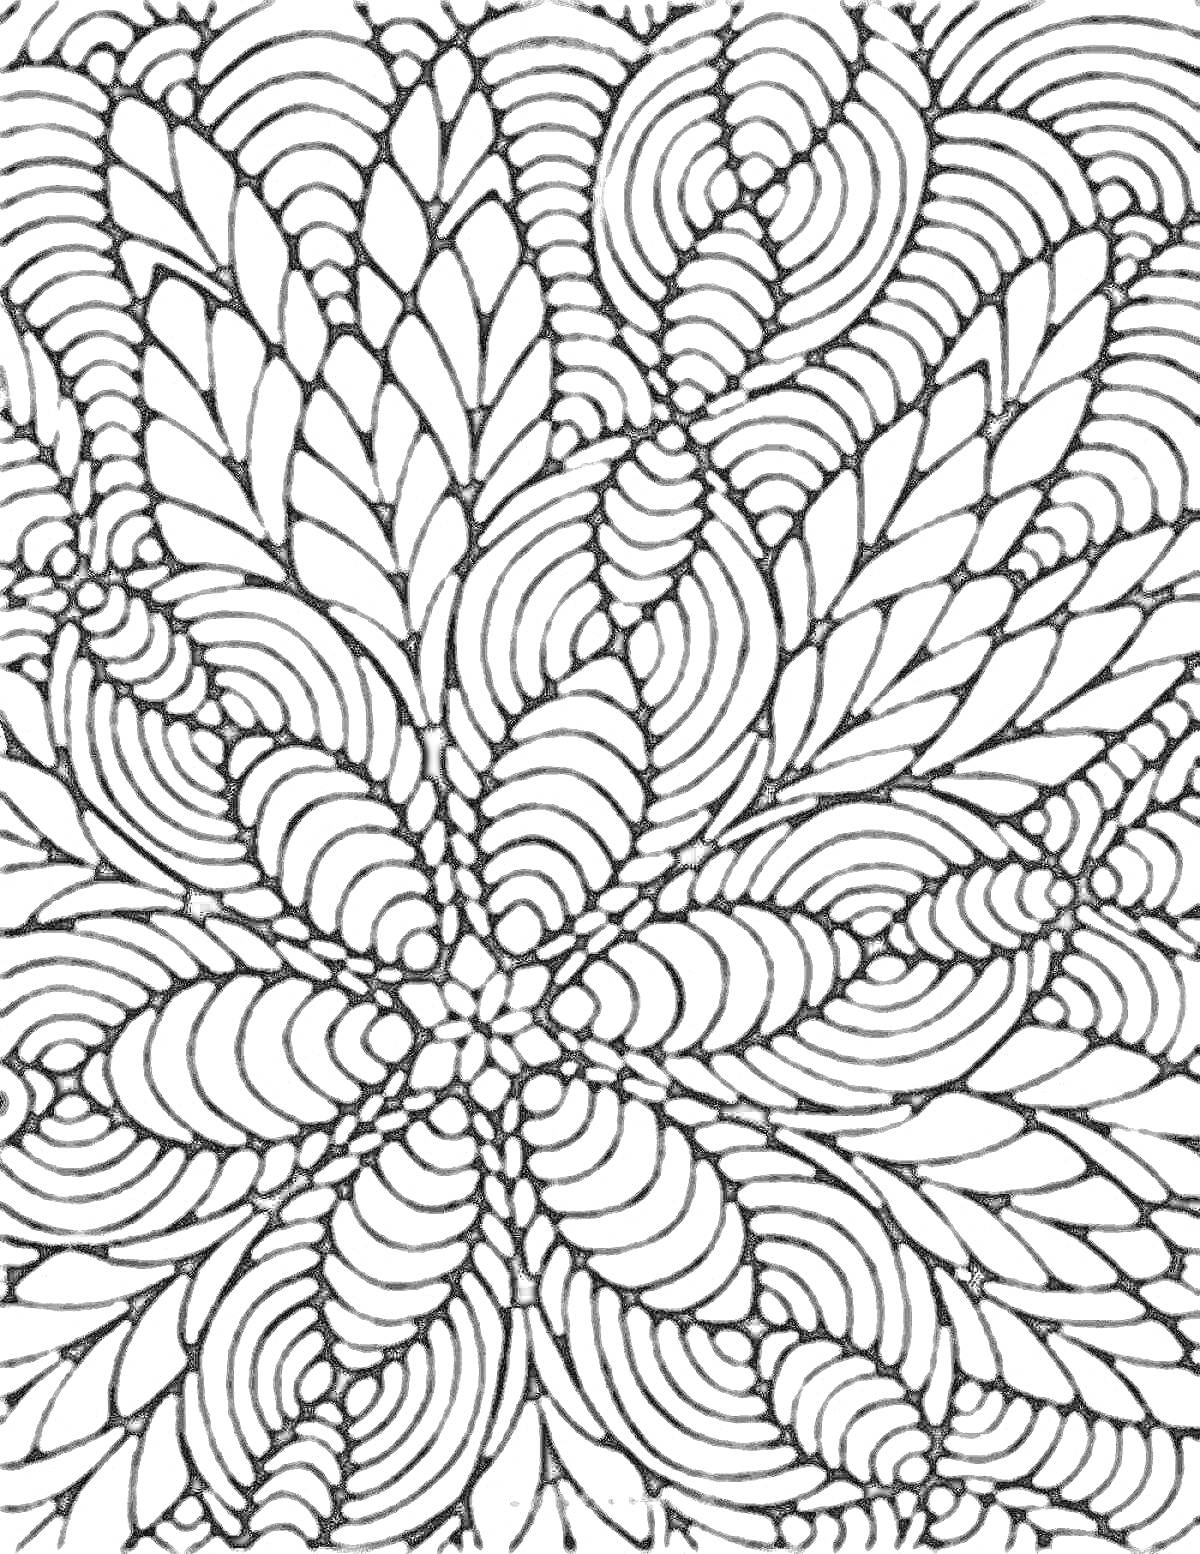 Раскраска узор листьев и спиральных линий, заполняющий весь лист